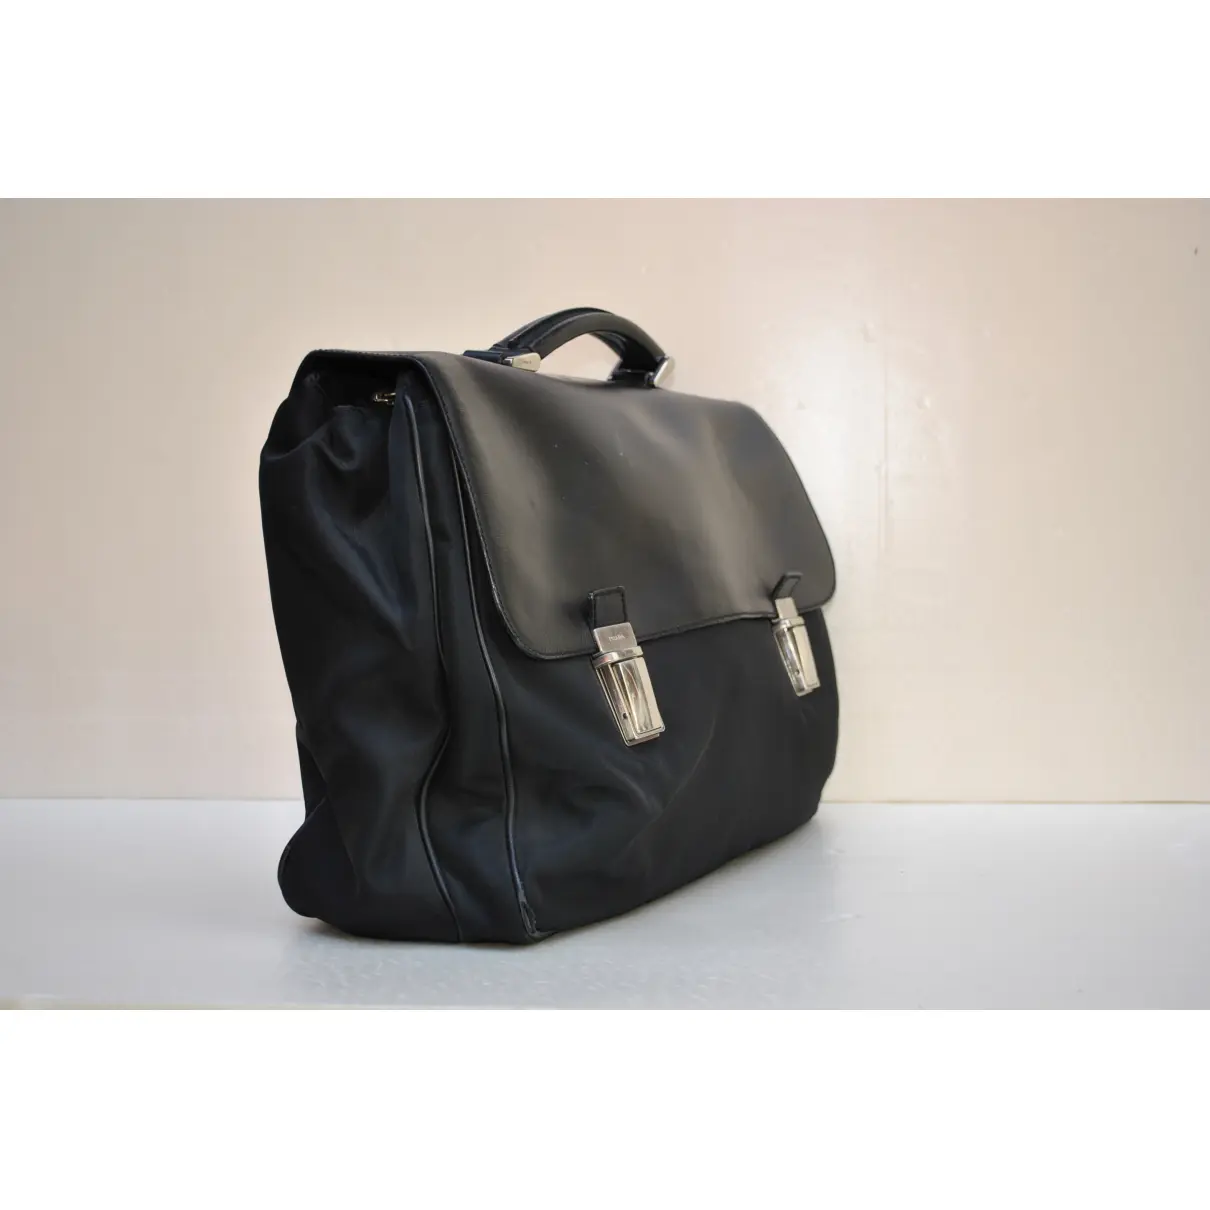 Buy Prada Leather satchel online - Vintage